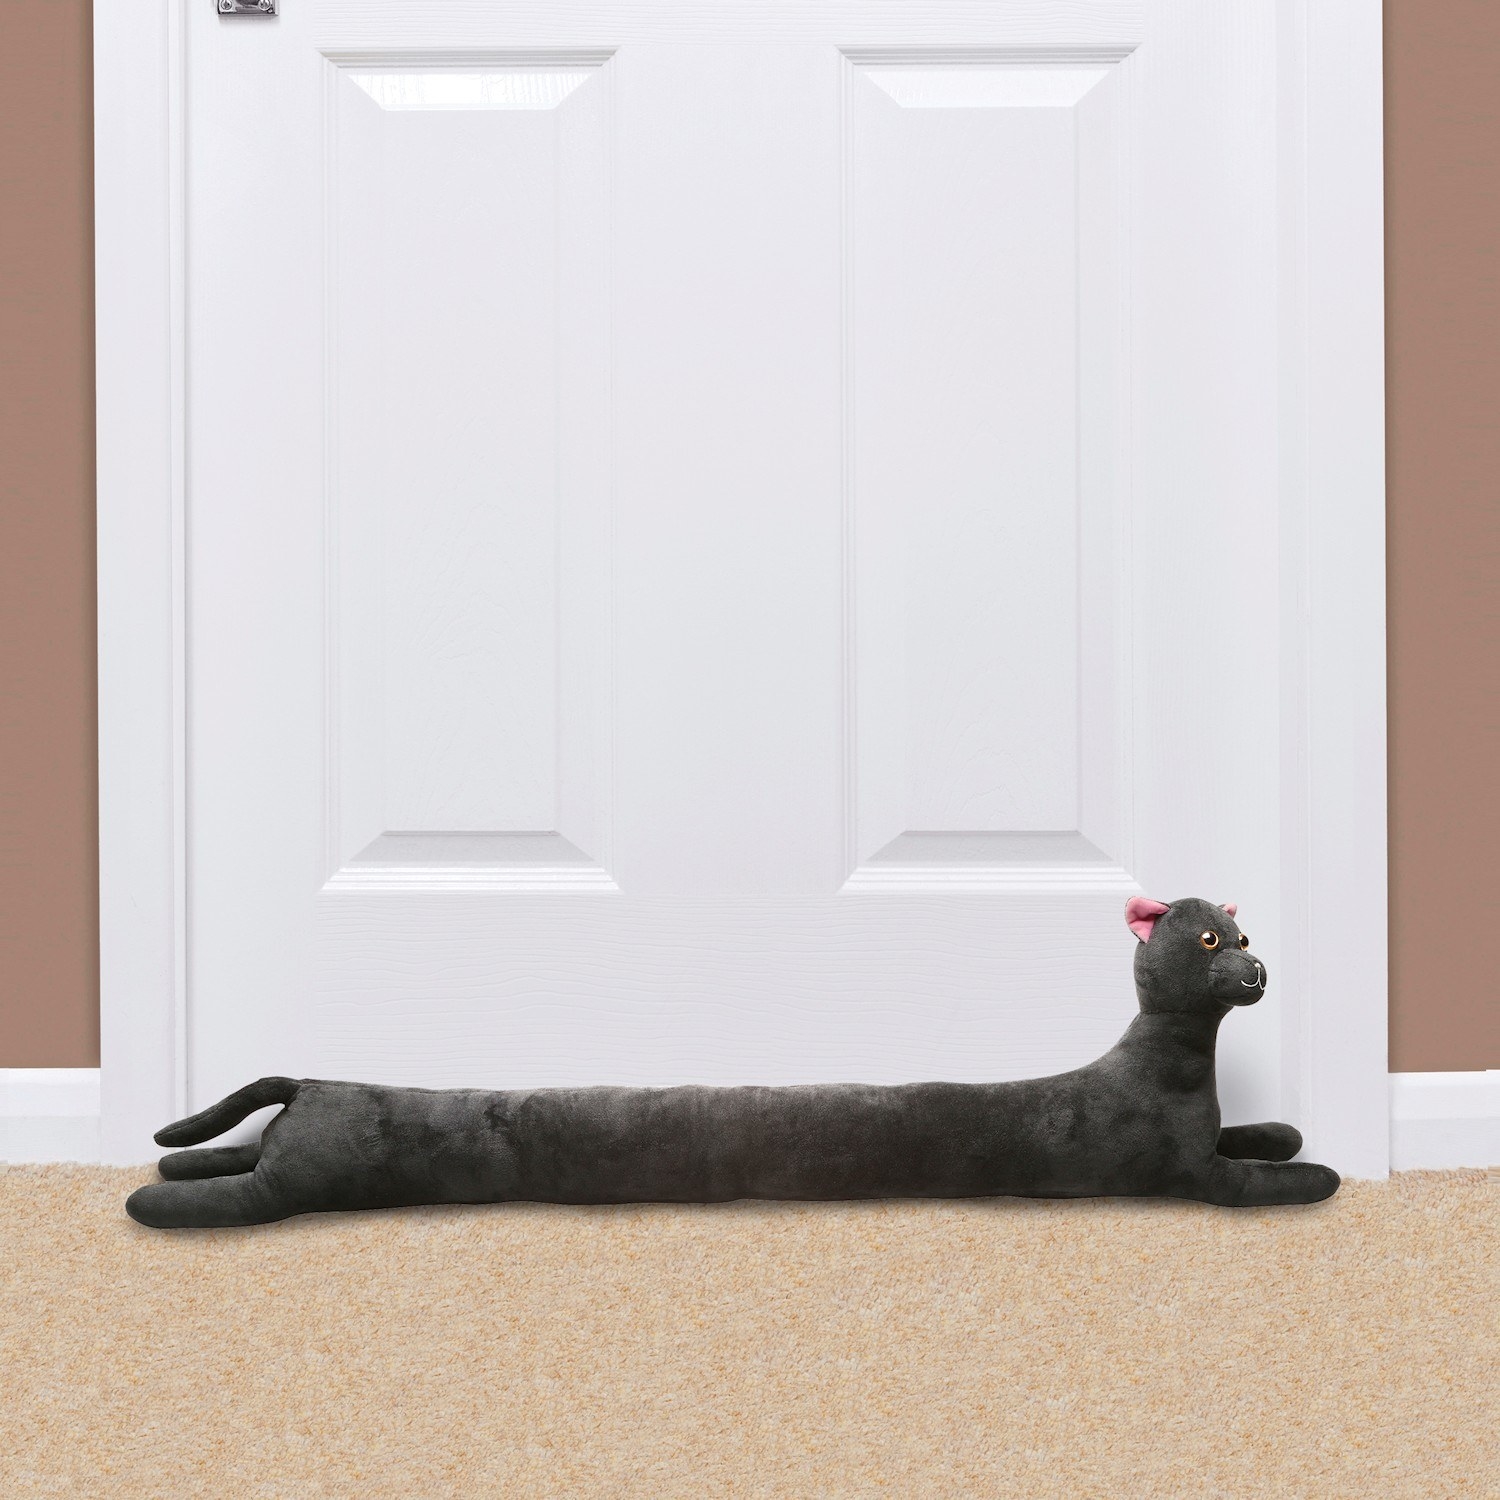 Cat style draft stopper on floor next to door